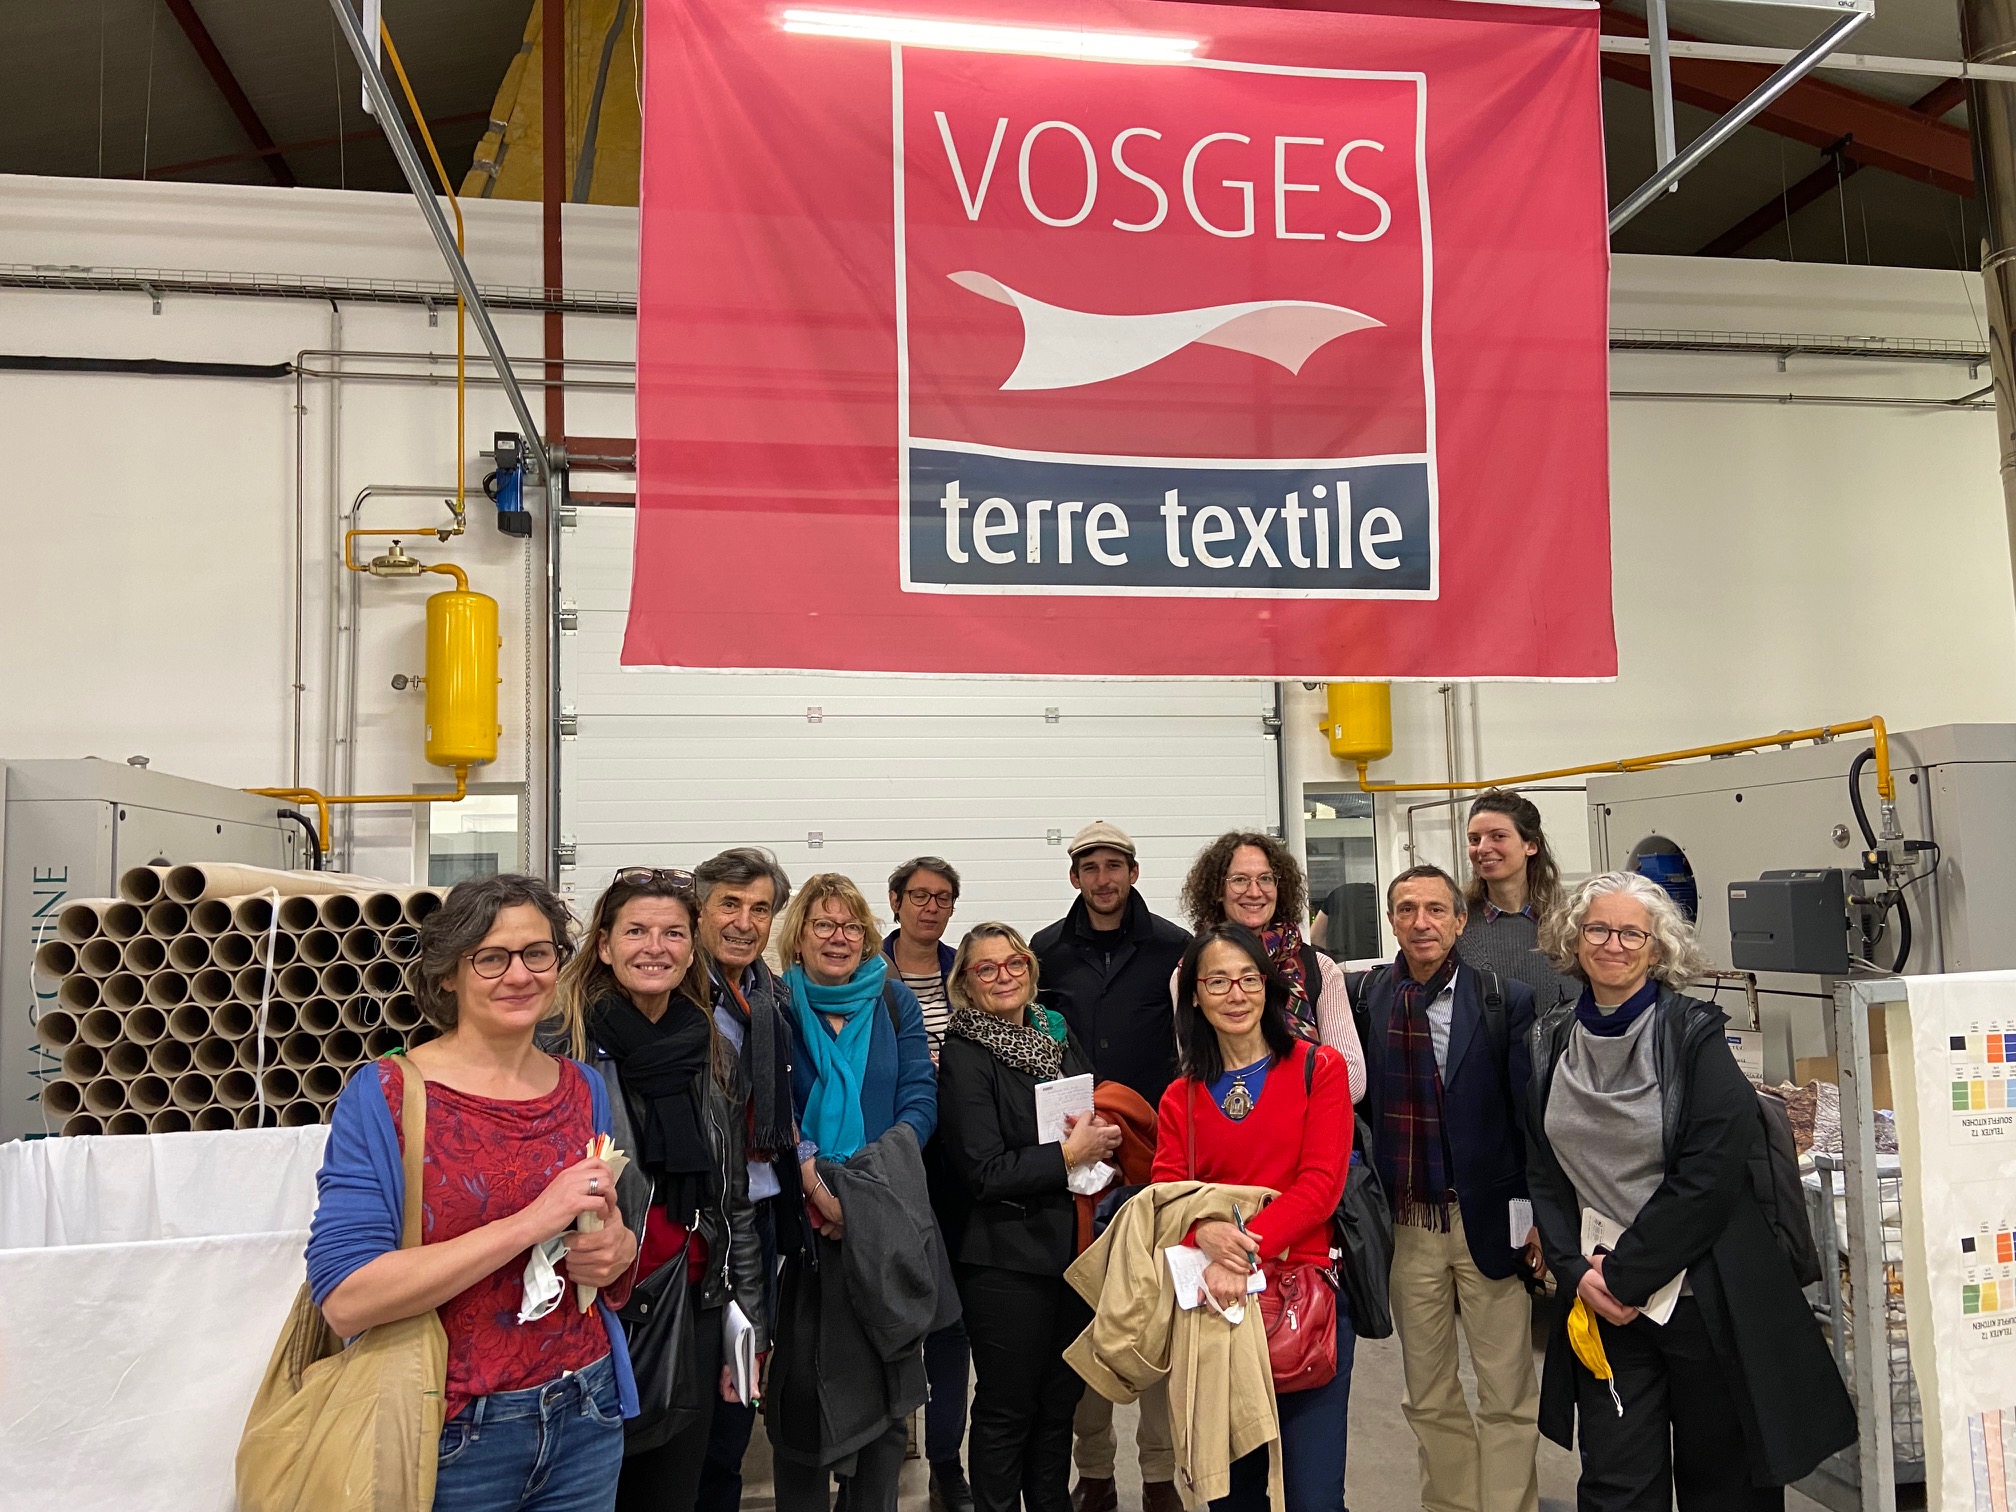 Les journalistes de l’AJPME sous la bannière du label Vosges terre textile ©Garnier-Thiébaut